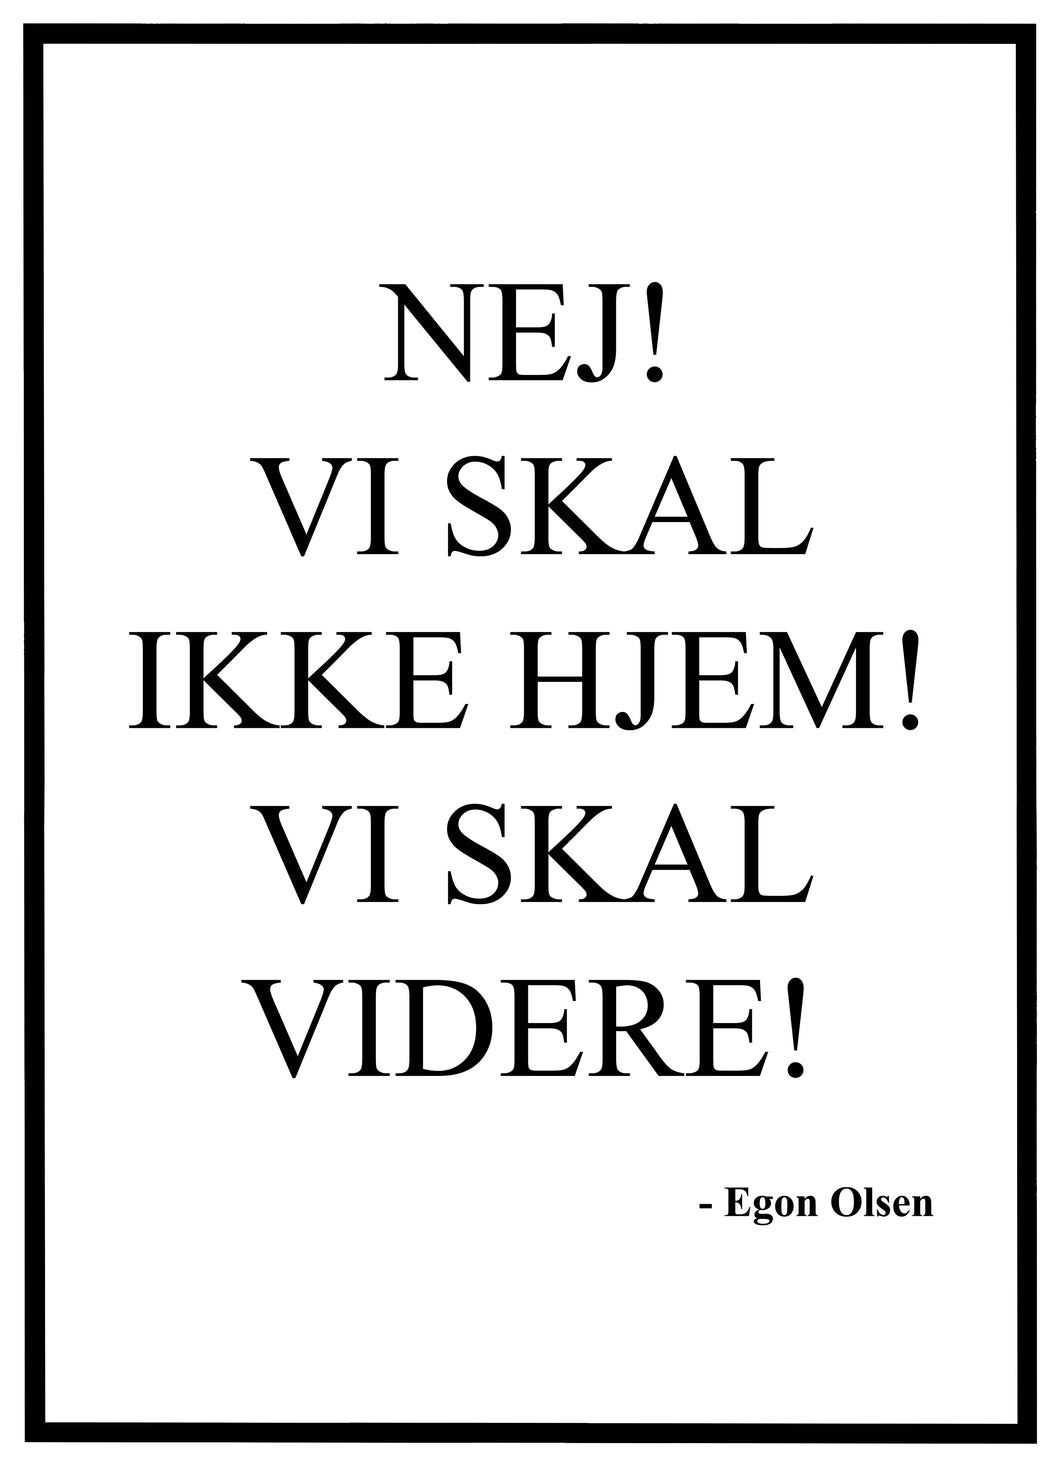 Egon Olsen - Plakat